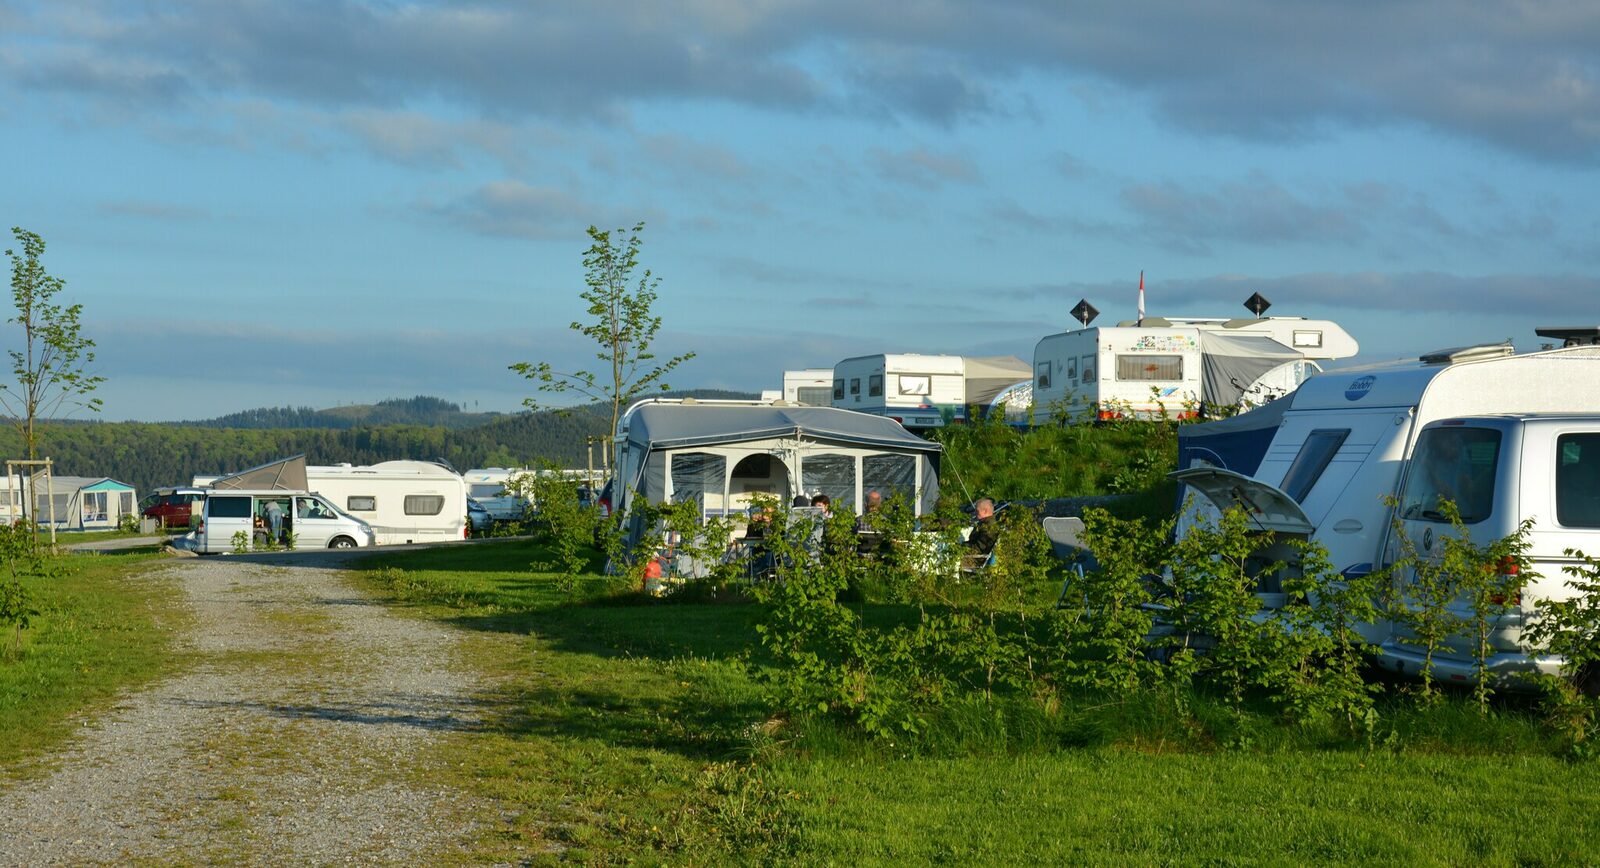 Categorie C - Kampeerplaats voor caravan of tent